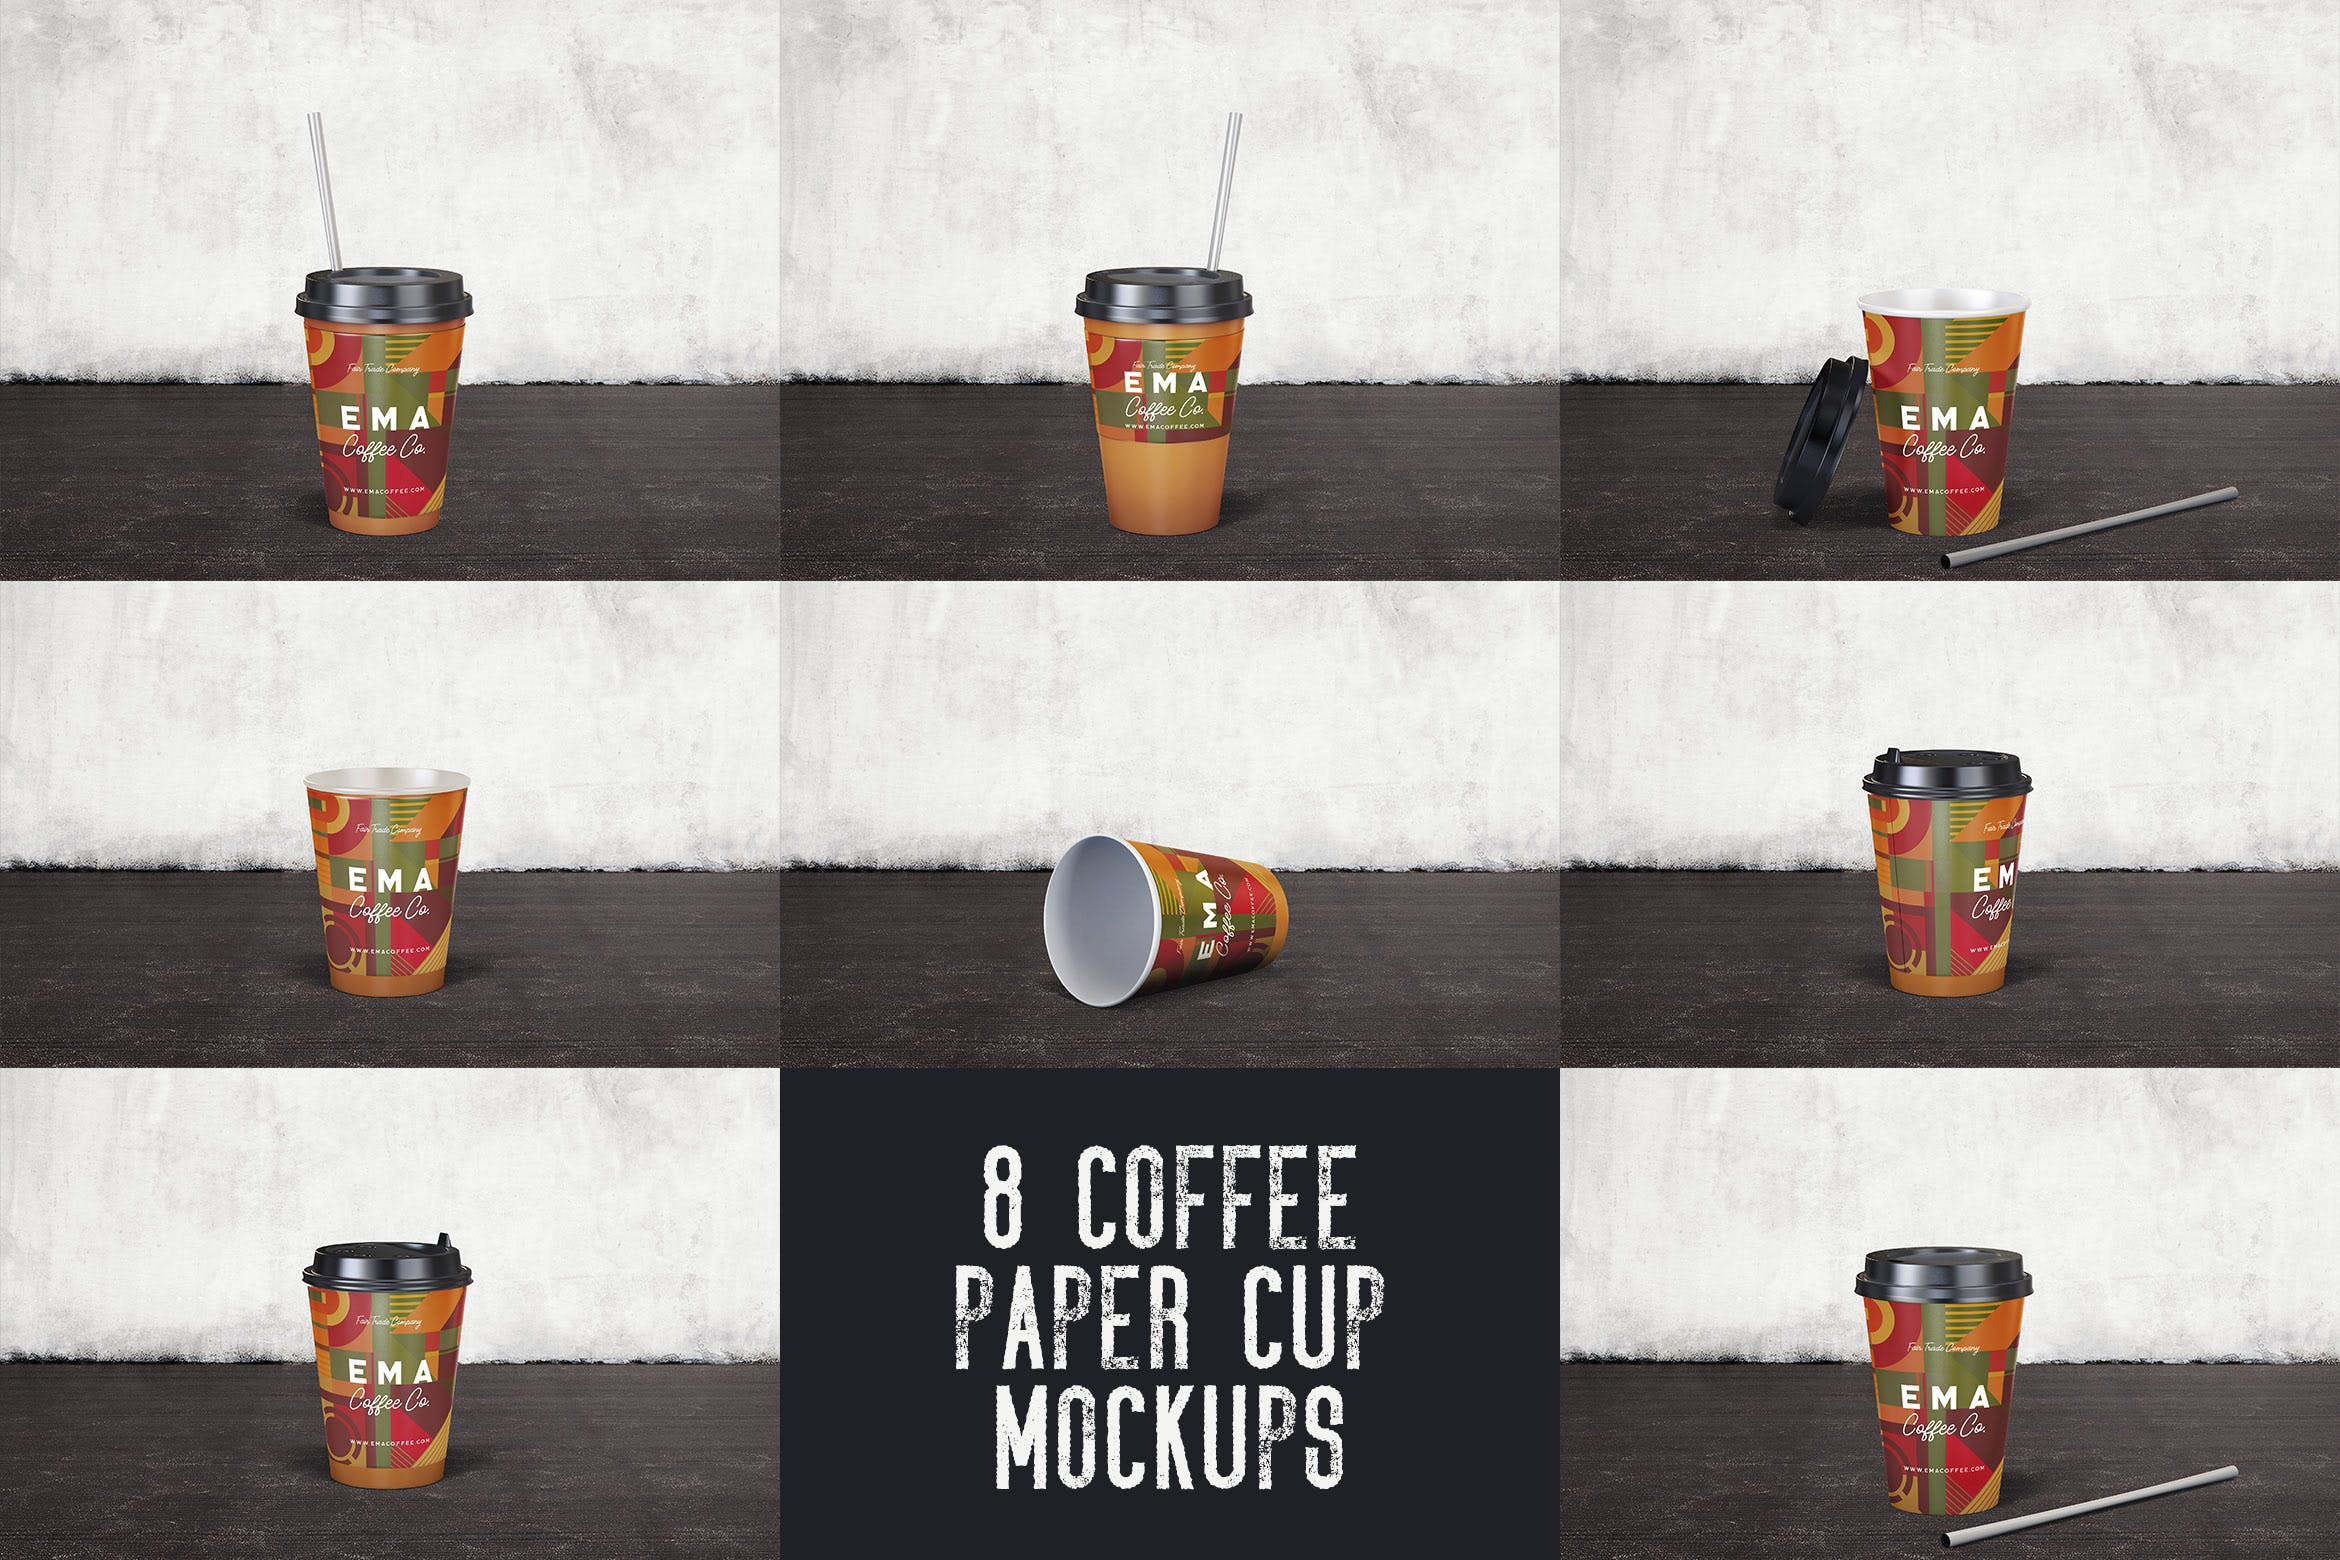 8个咖啡纸杯外观设计效果图素材中国精选 8 Coffee Paper Cup Mockups插图